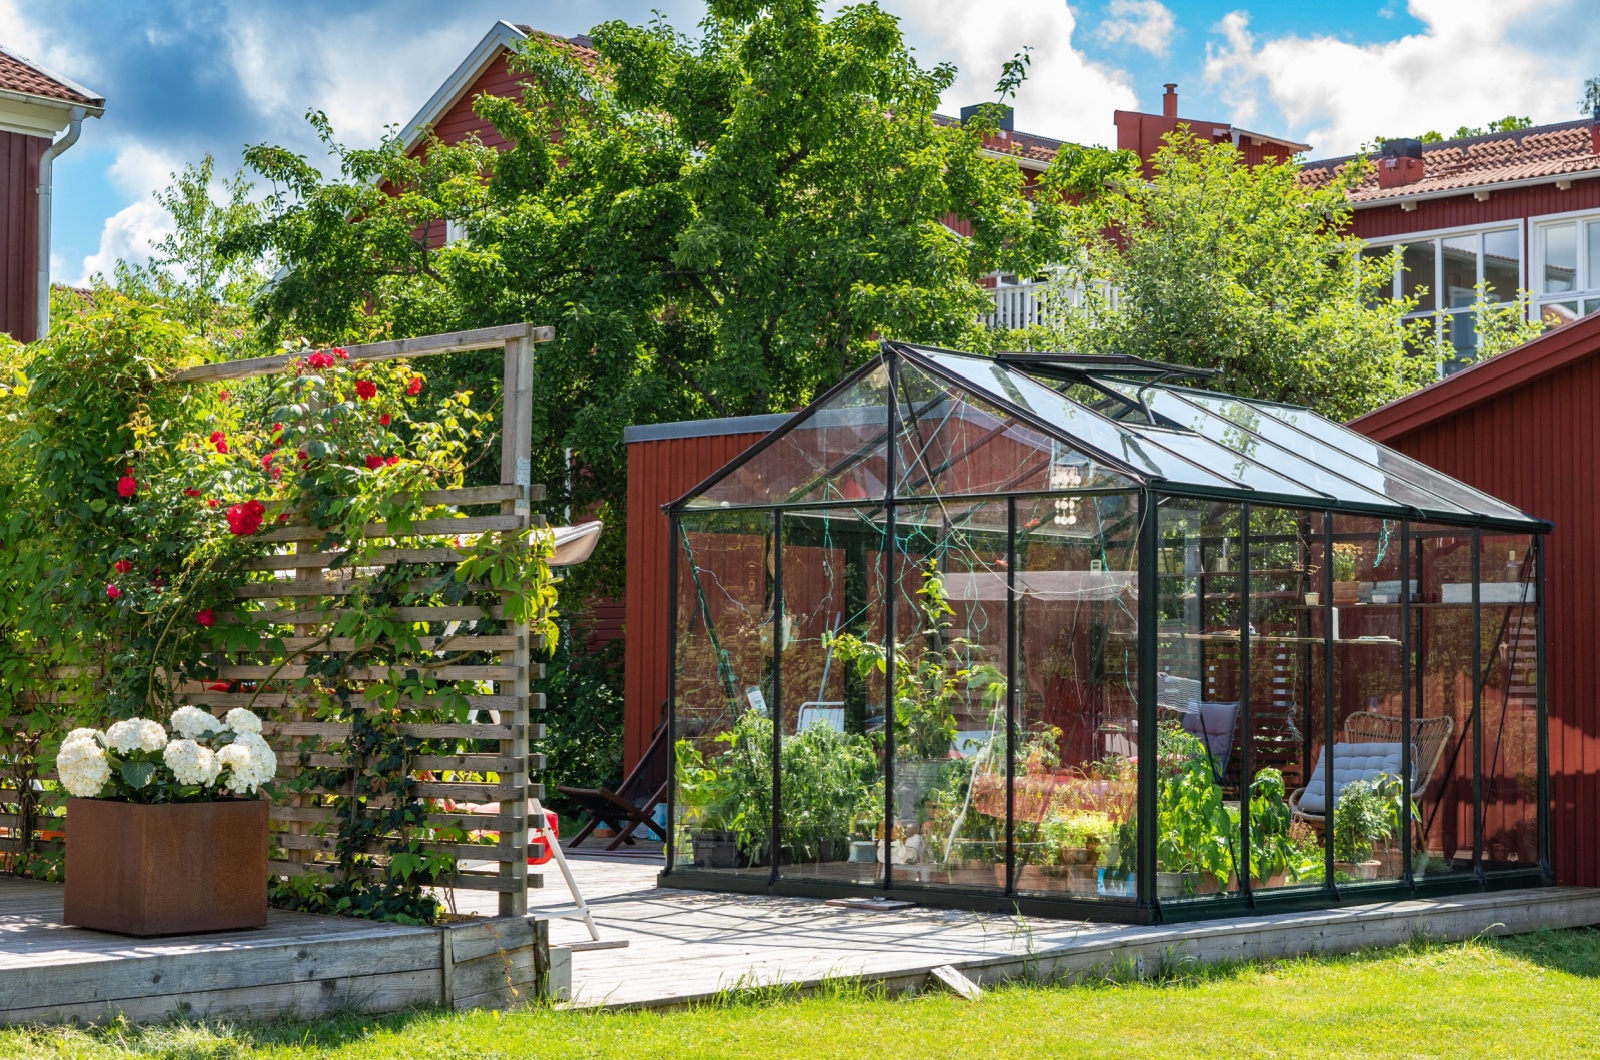 Greenhouse in yard